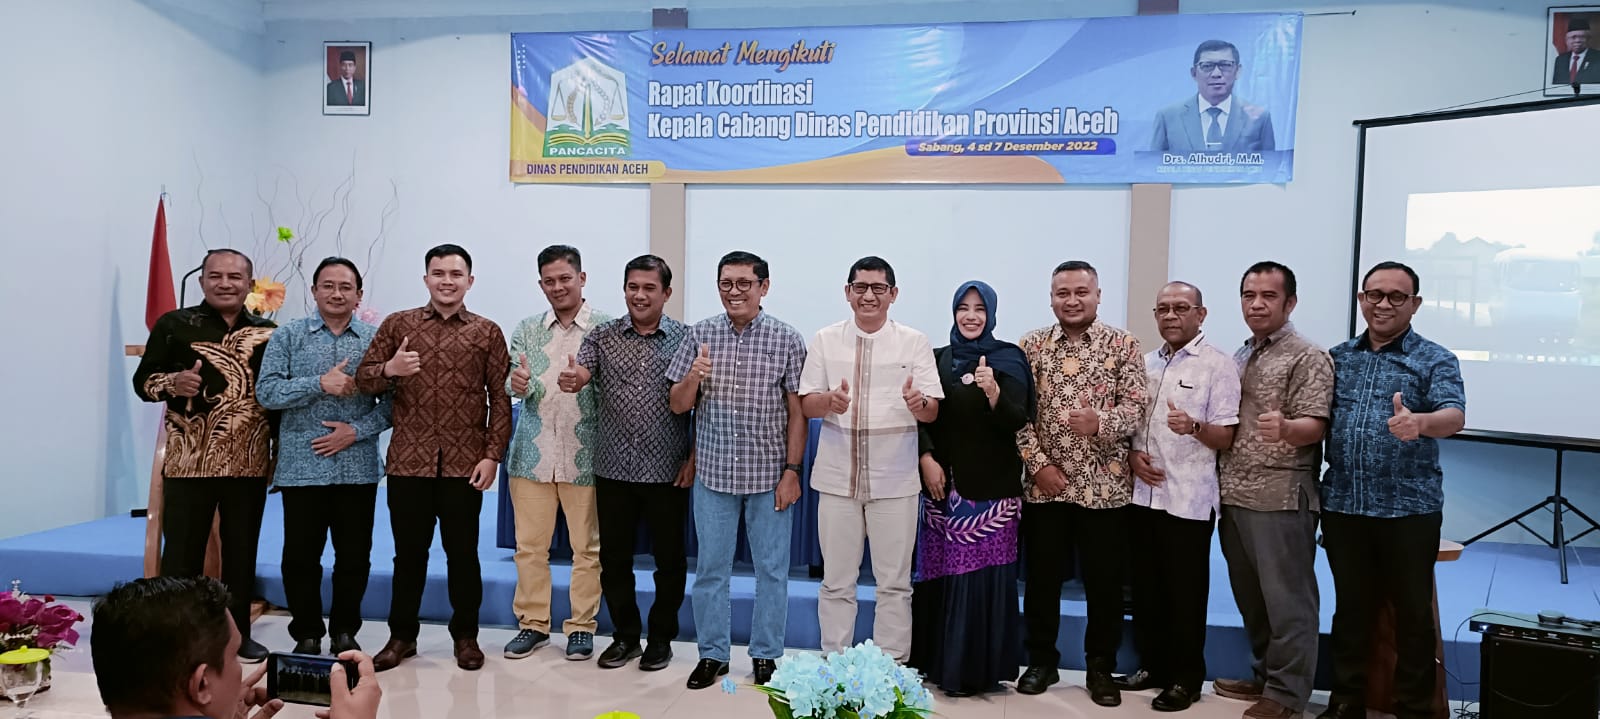 Buka Rakor Cabang Dinas, Kadisdik Aceh Ingatkan Kacabdin Optimalkan Layanan Pendidikan